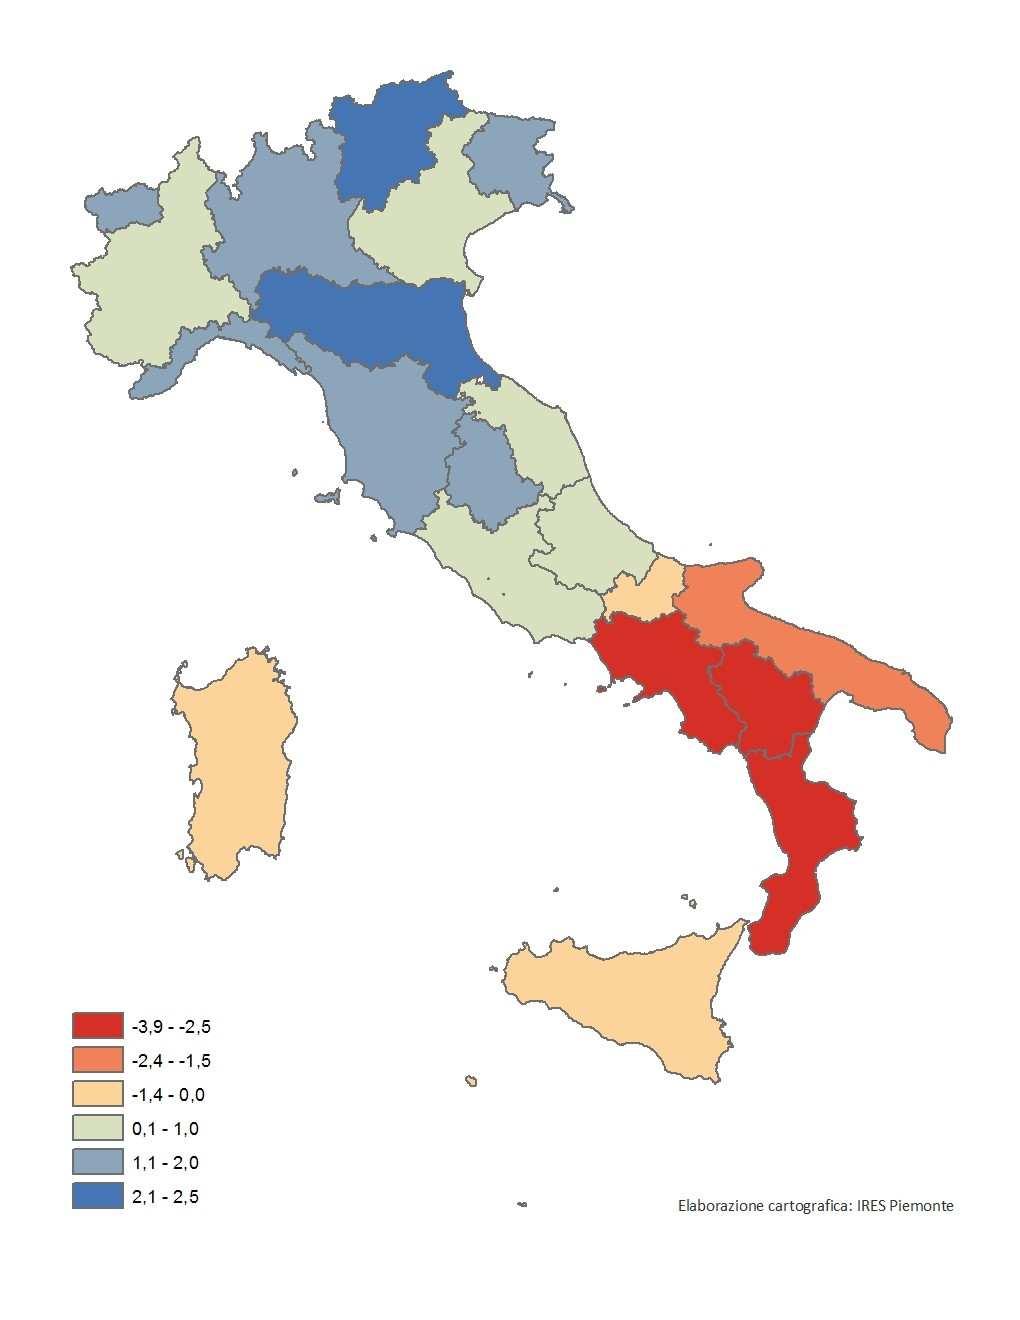 2,5 ). La regione con la maggiore capacità attrattiva è nuovamente l Emilia-Romagna (2,5 ) seguita dal Trentino-Alto Adige ( 2,2 ).